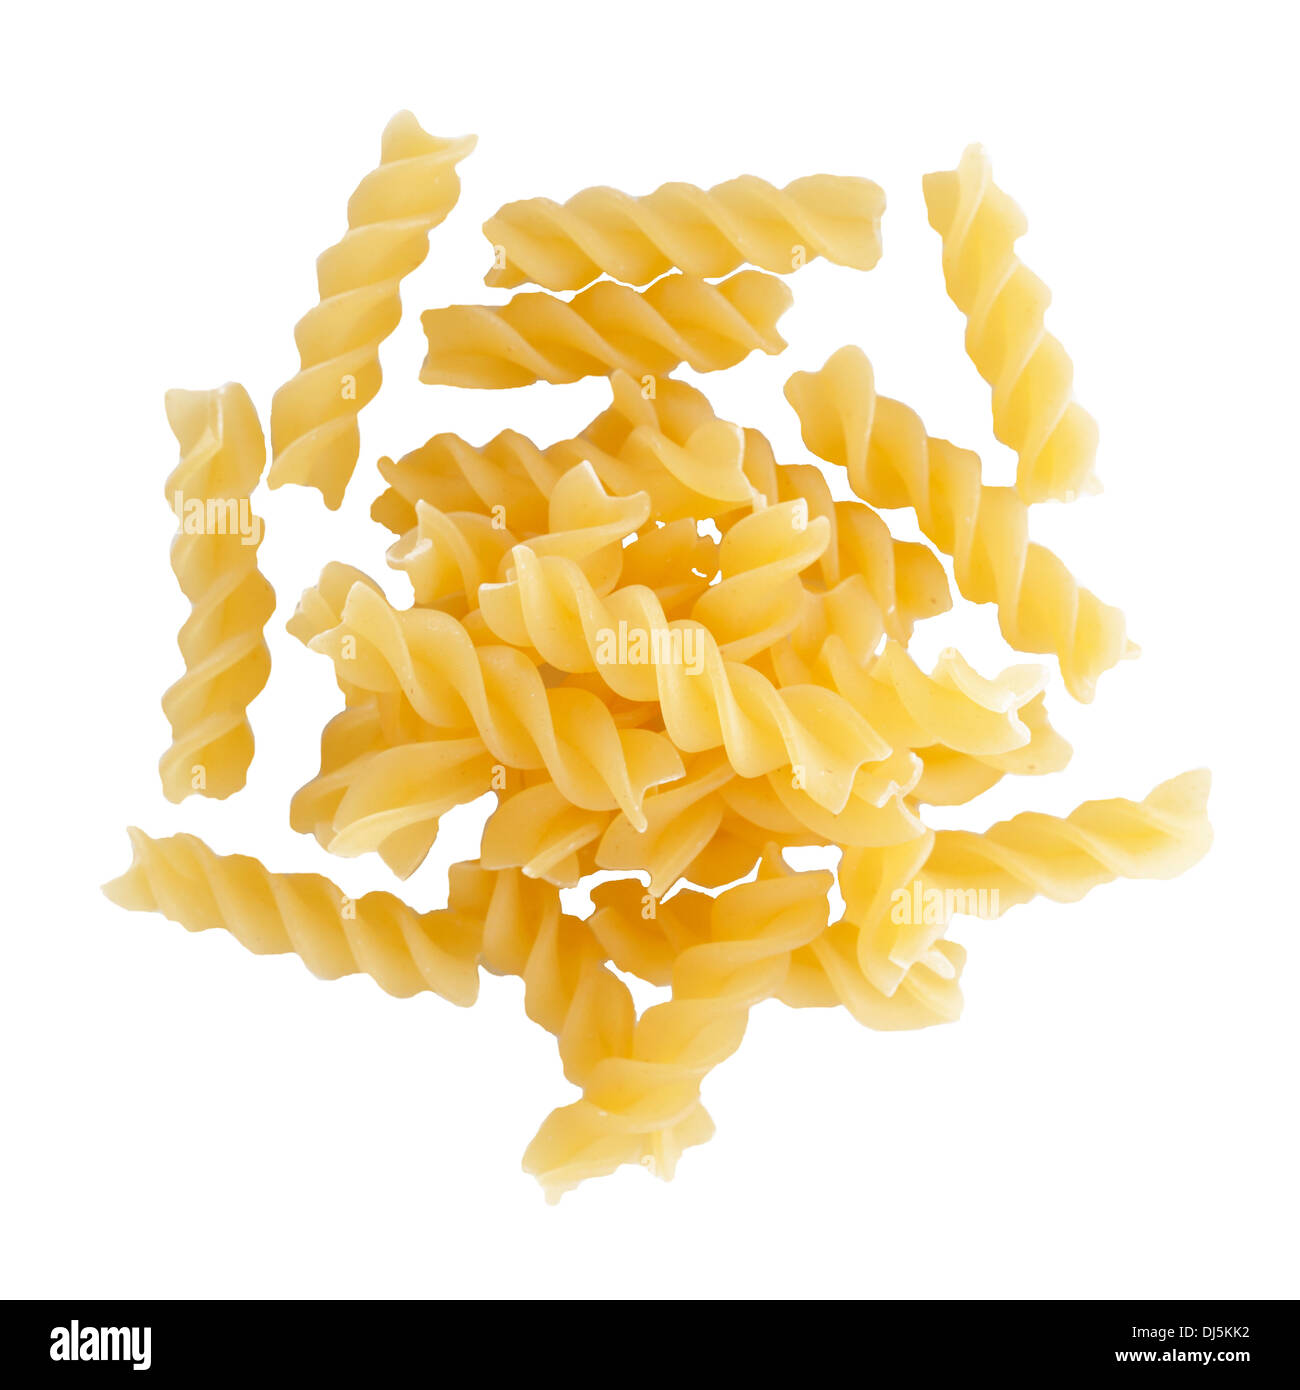 Fusilli pasta on a white background Stock Photo